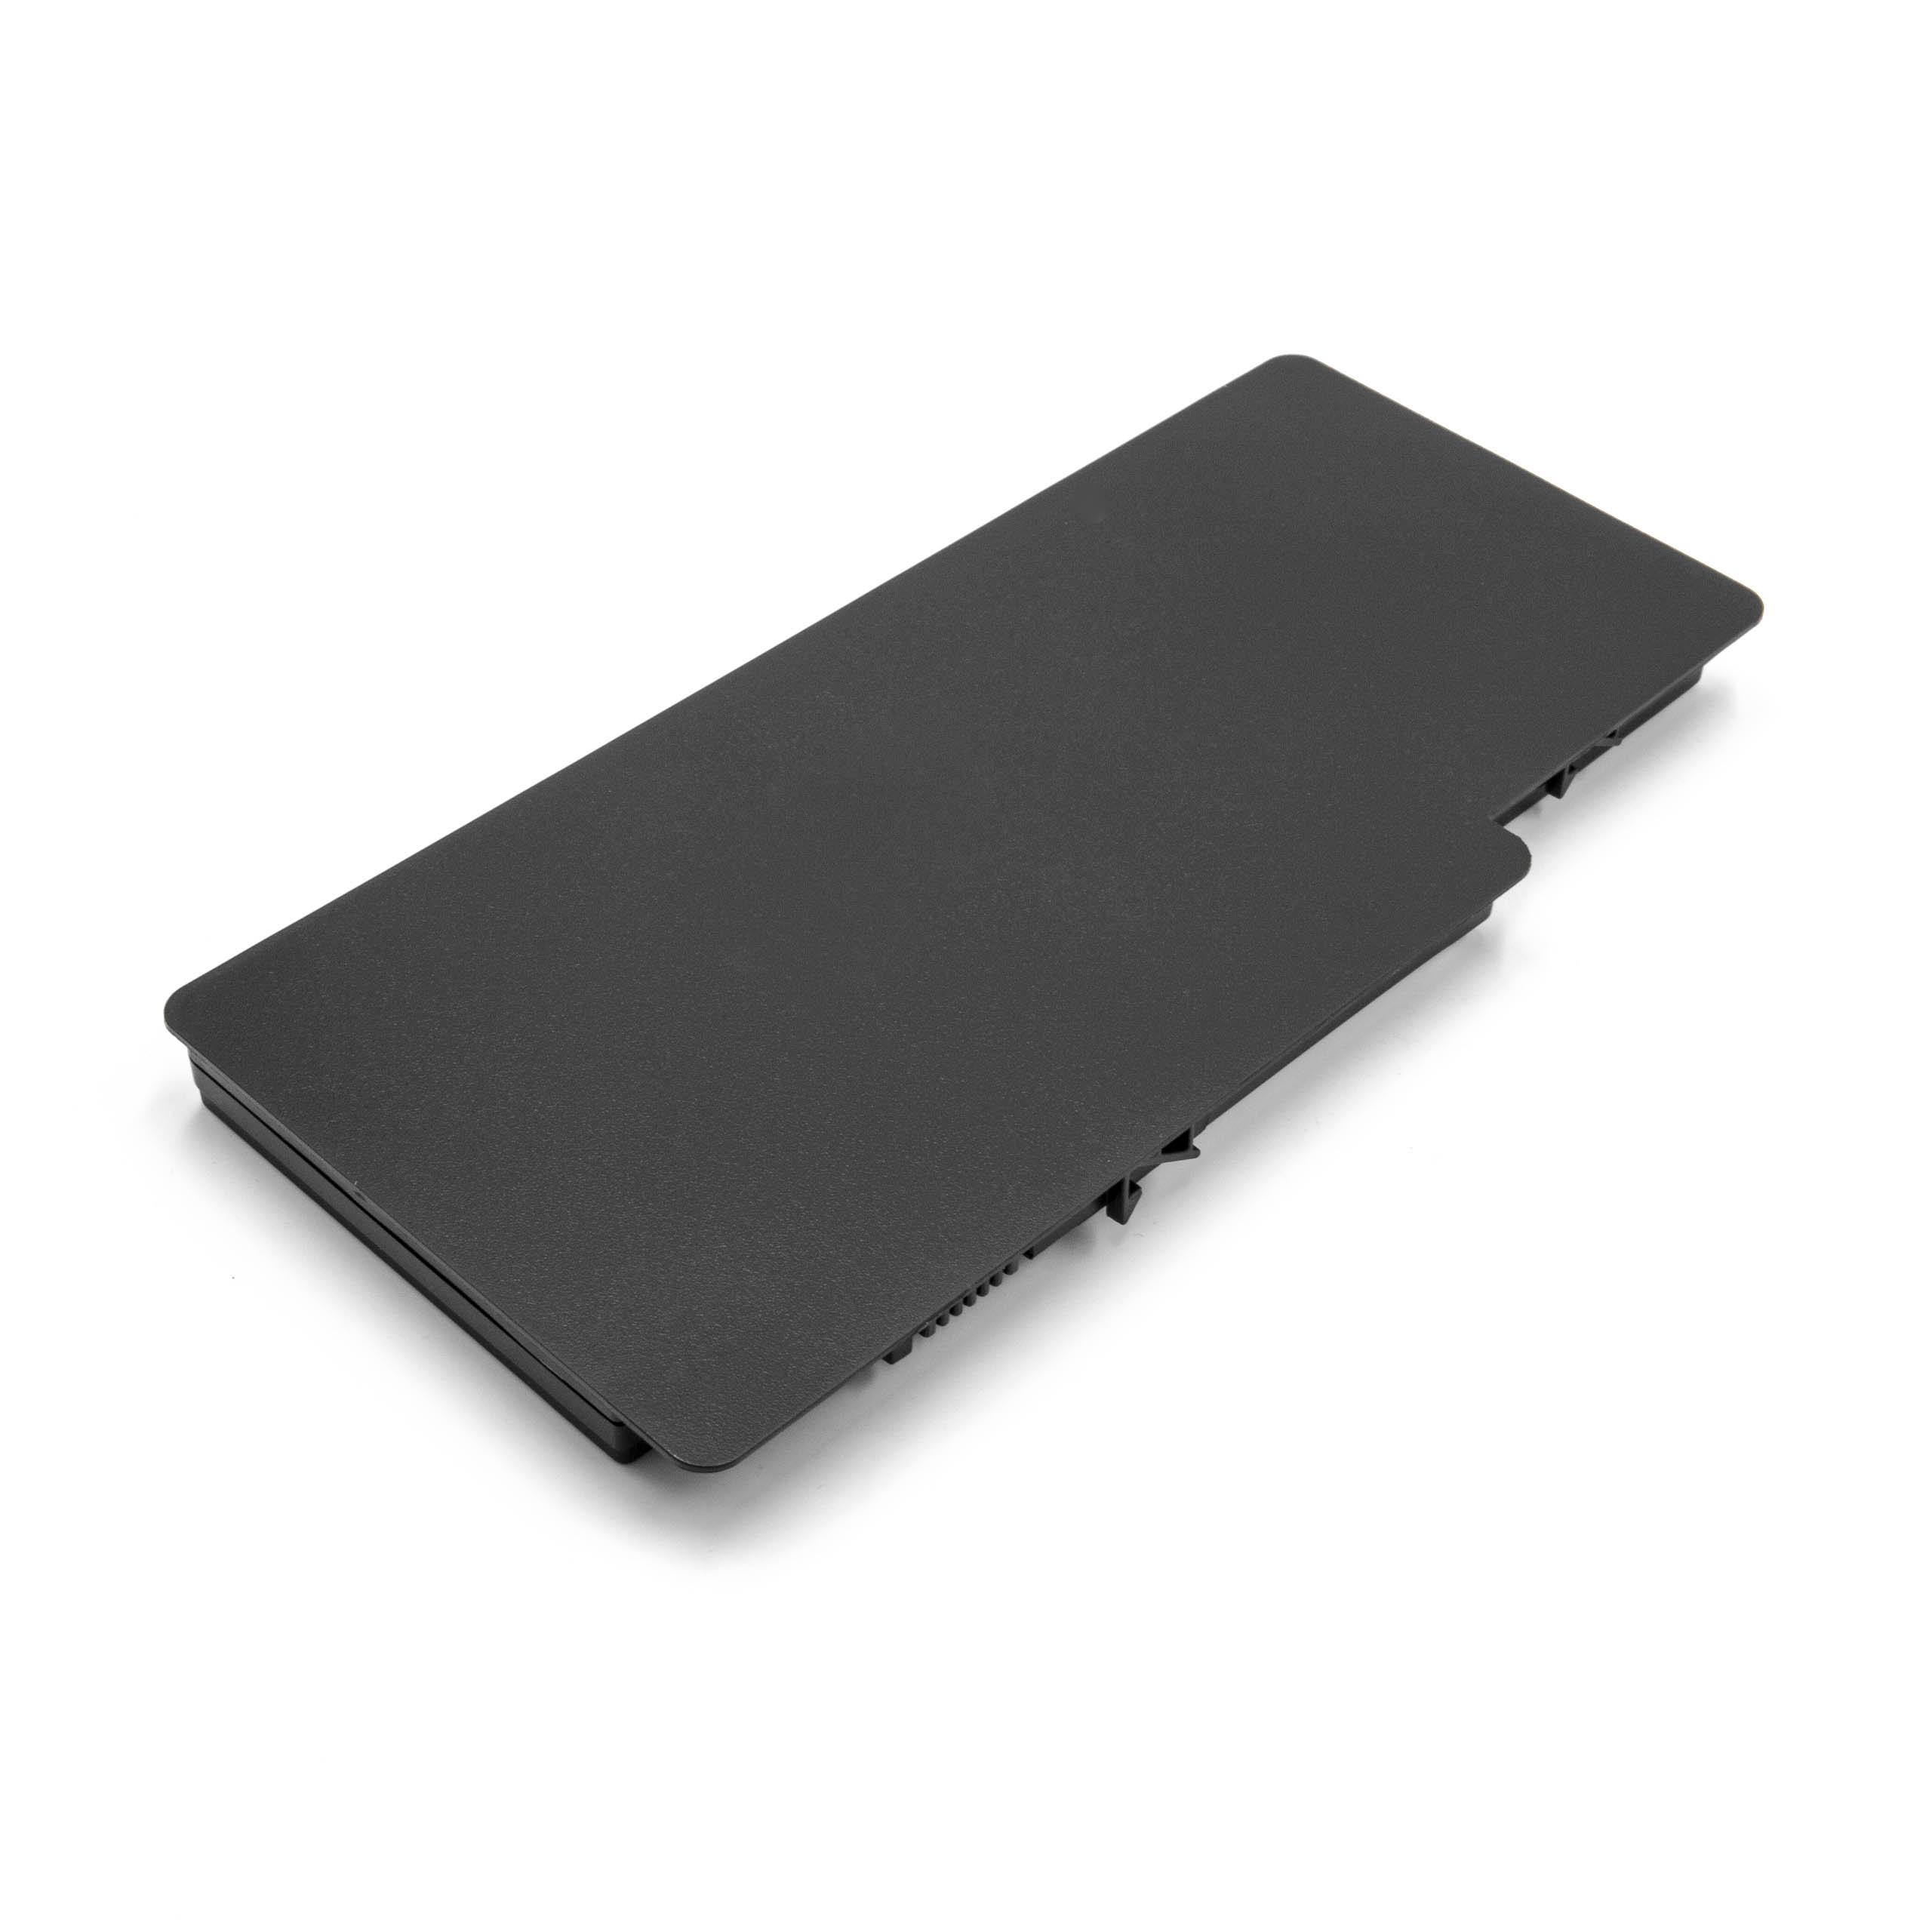 Batterie remplace HSTNN-OB0L pour ordinateur portable - 5200mAh 11,1V Li-polymère, noir